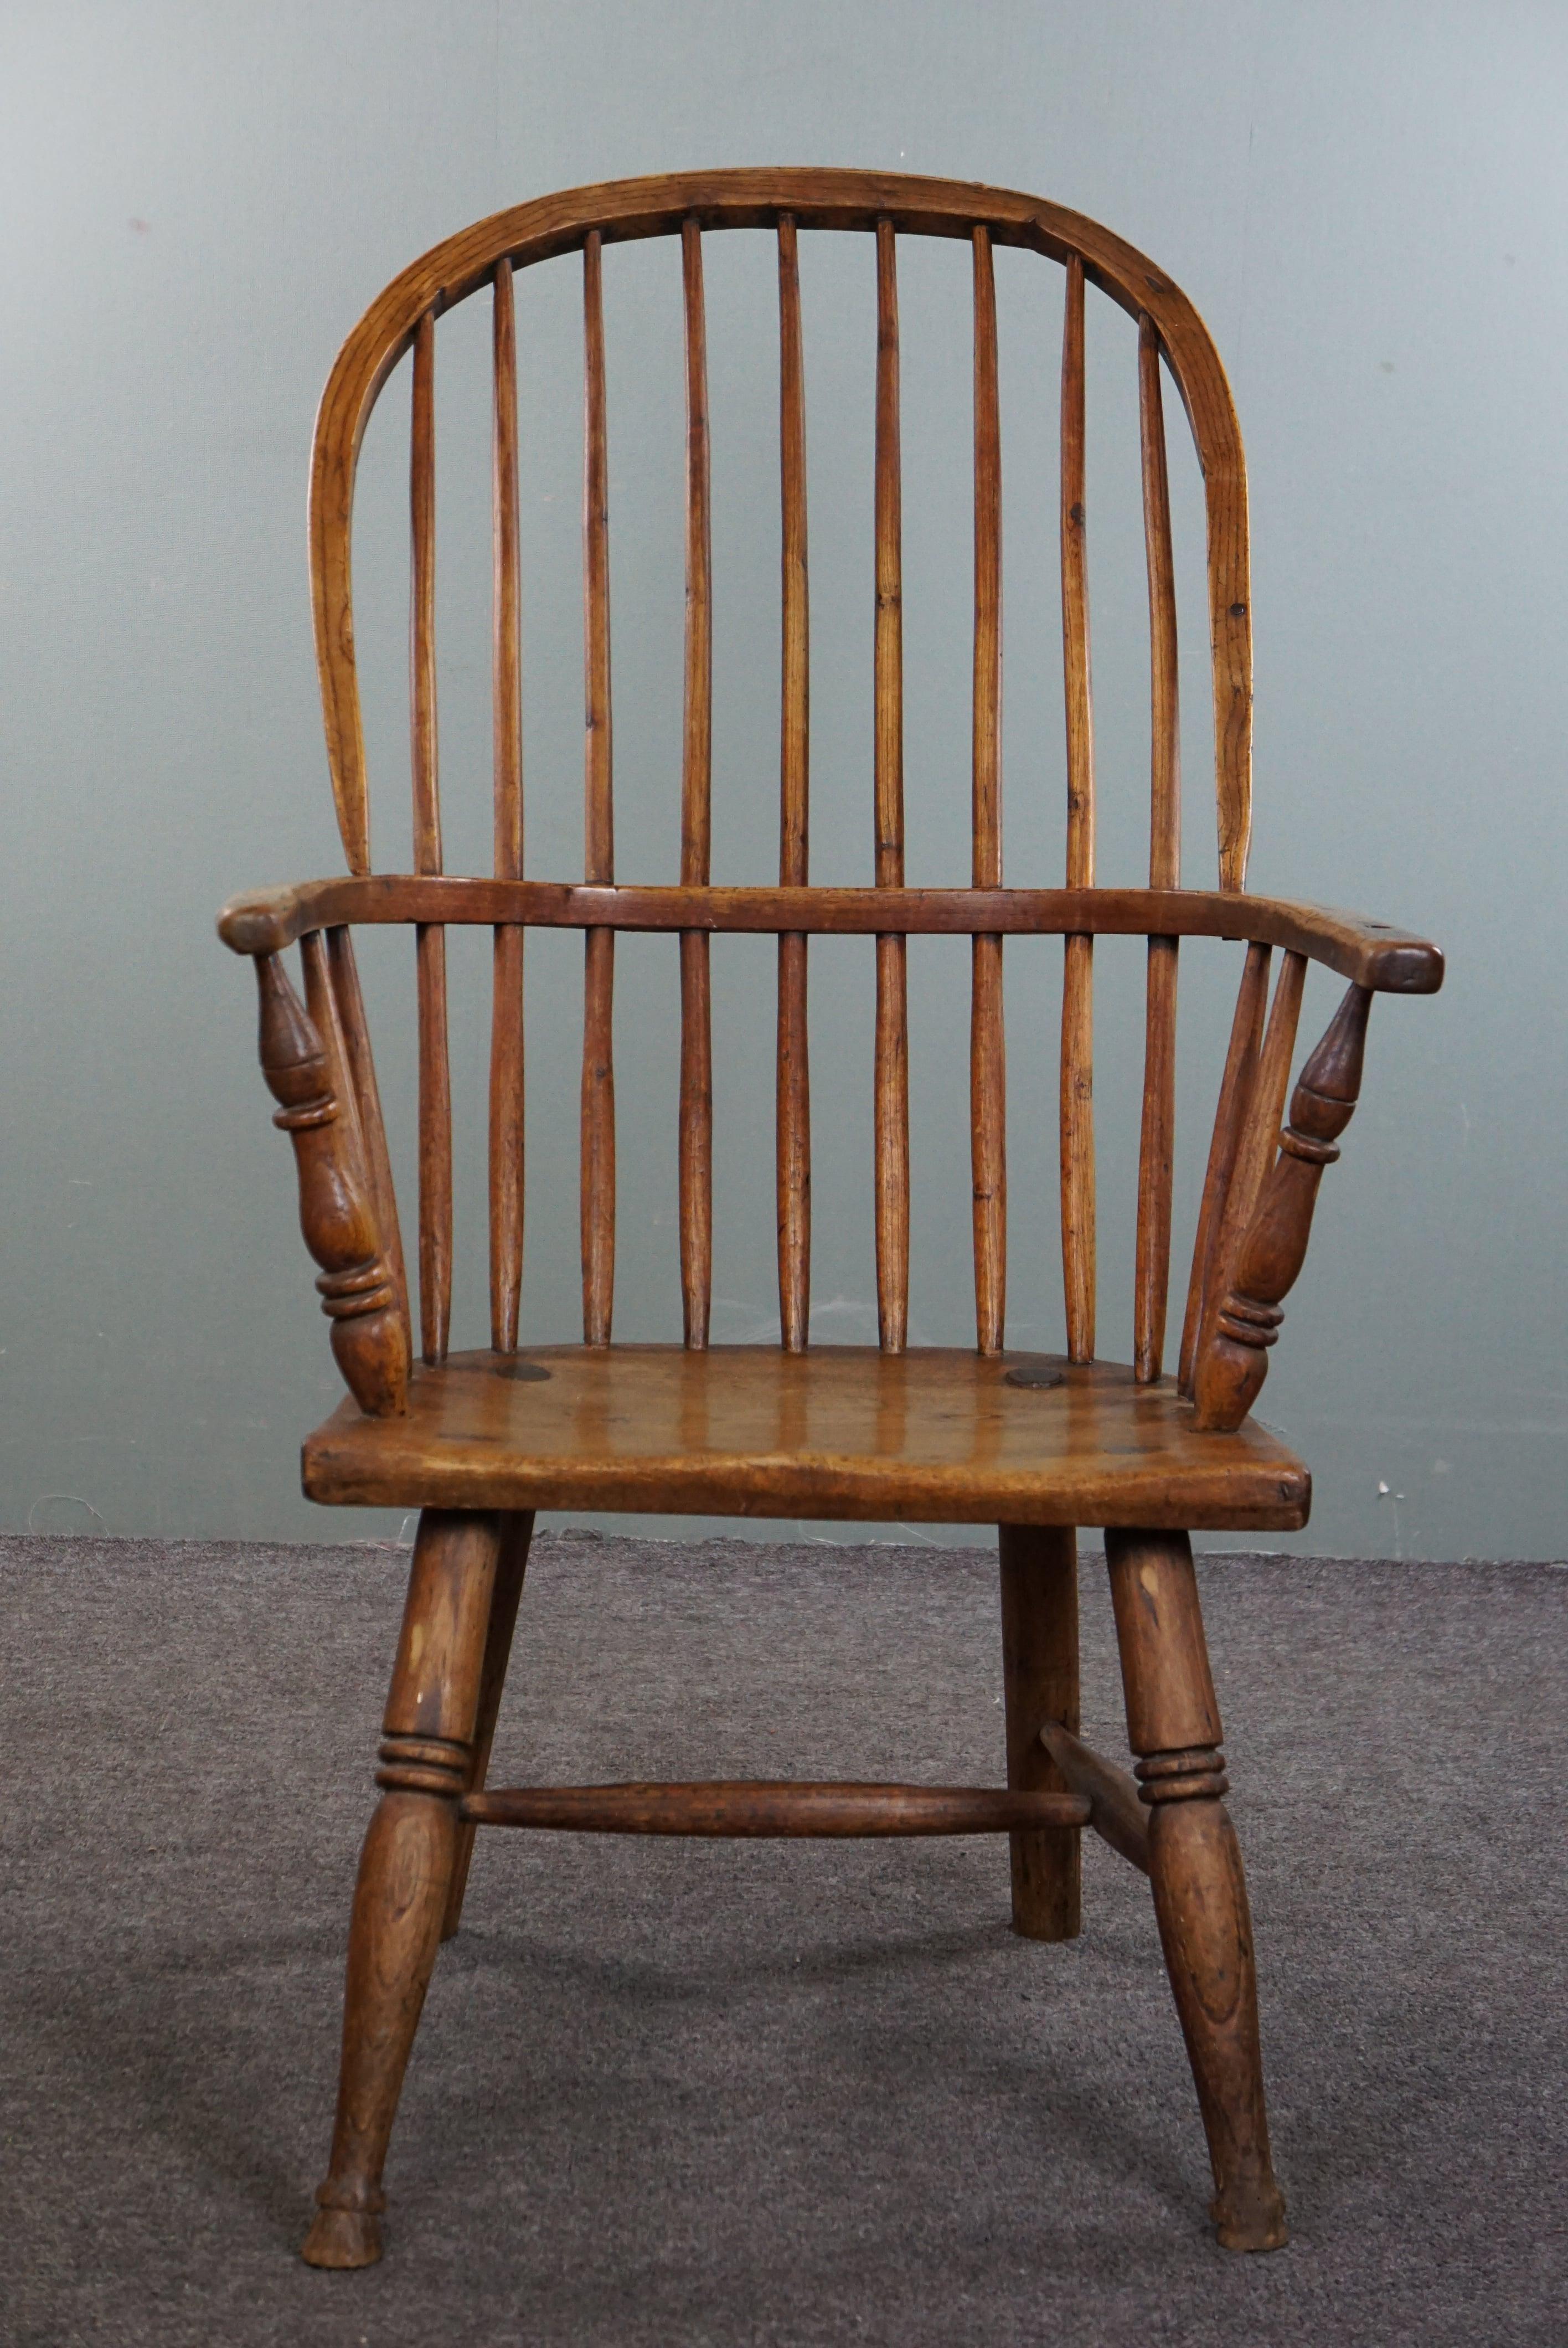 Nous vous proposons cette magnifique chaise Windsor anglaise du début du 19ème siècle. La chaise Windsor est un classique intemporel et peut facilement trouver sa place dans un intérieur moderne ou classique.

La chaise proposée ici par nos soins